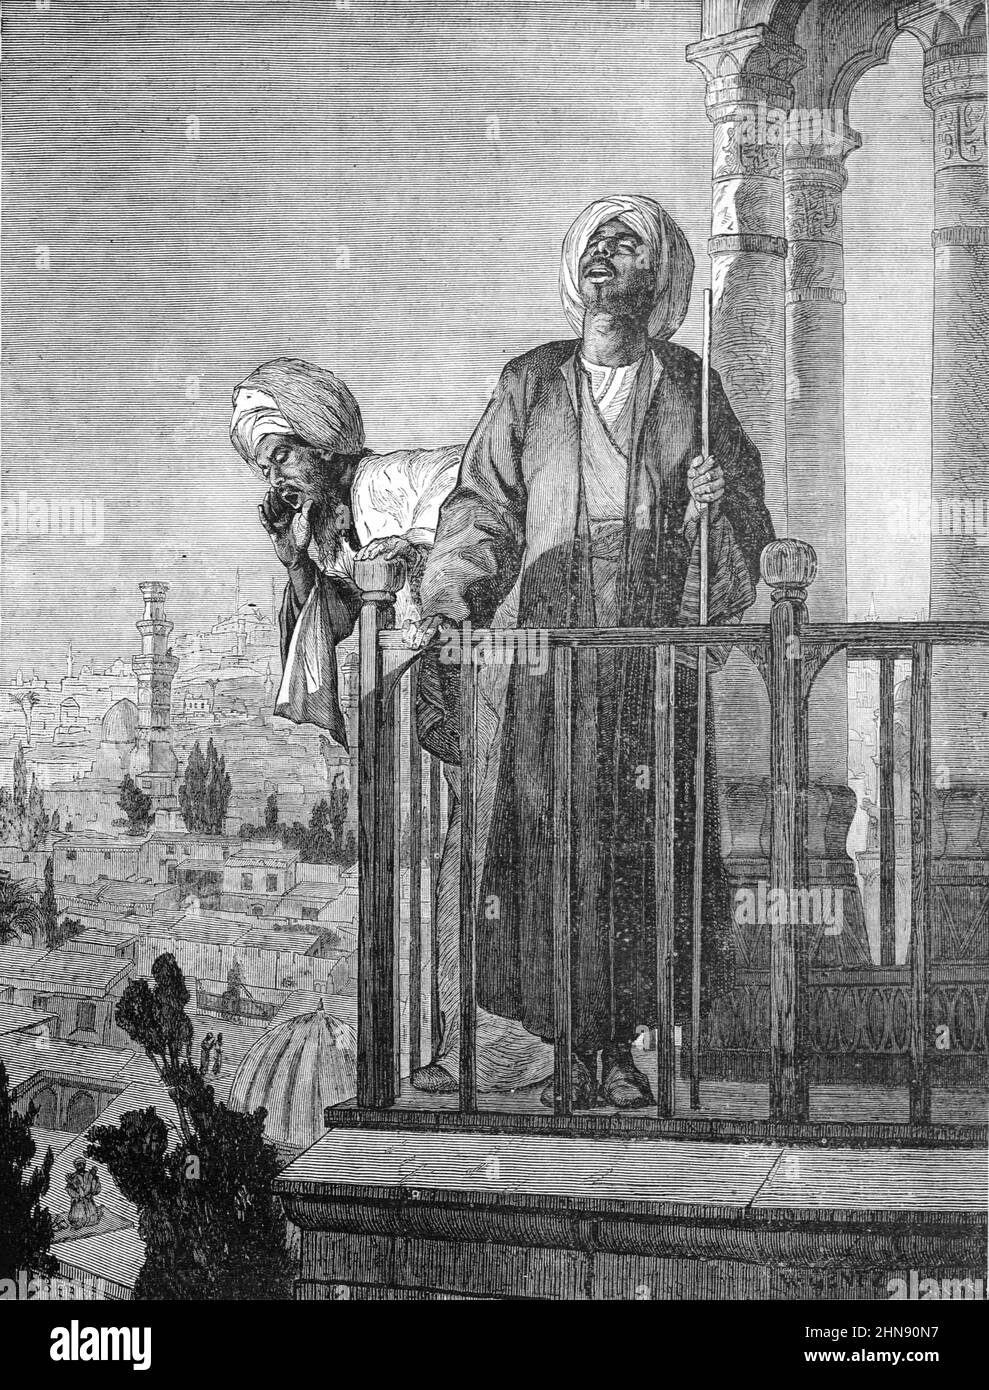 Muezzin appel à la prière du Minaret de la Mosquée Alexandrie Egypte. Illustration ancienne ou gravure 1882 Banque D'Images